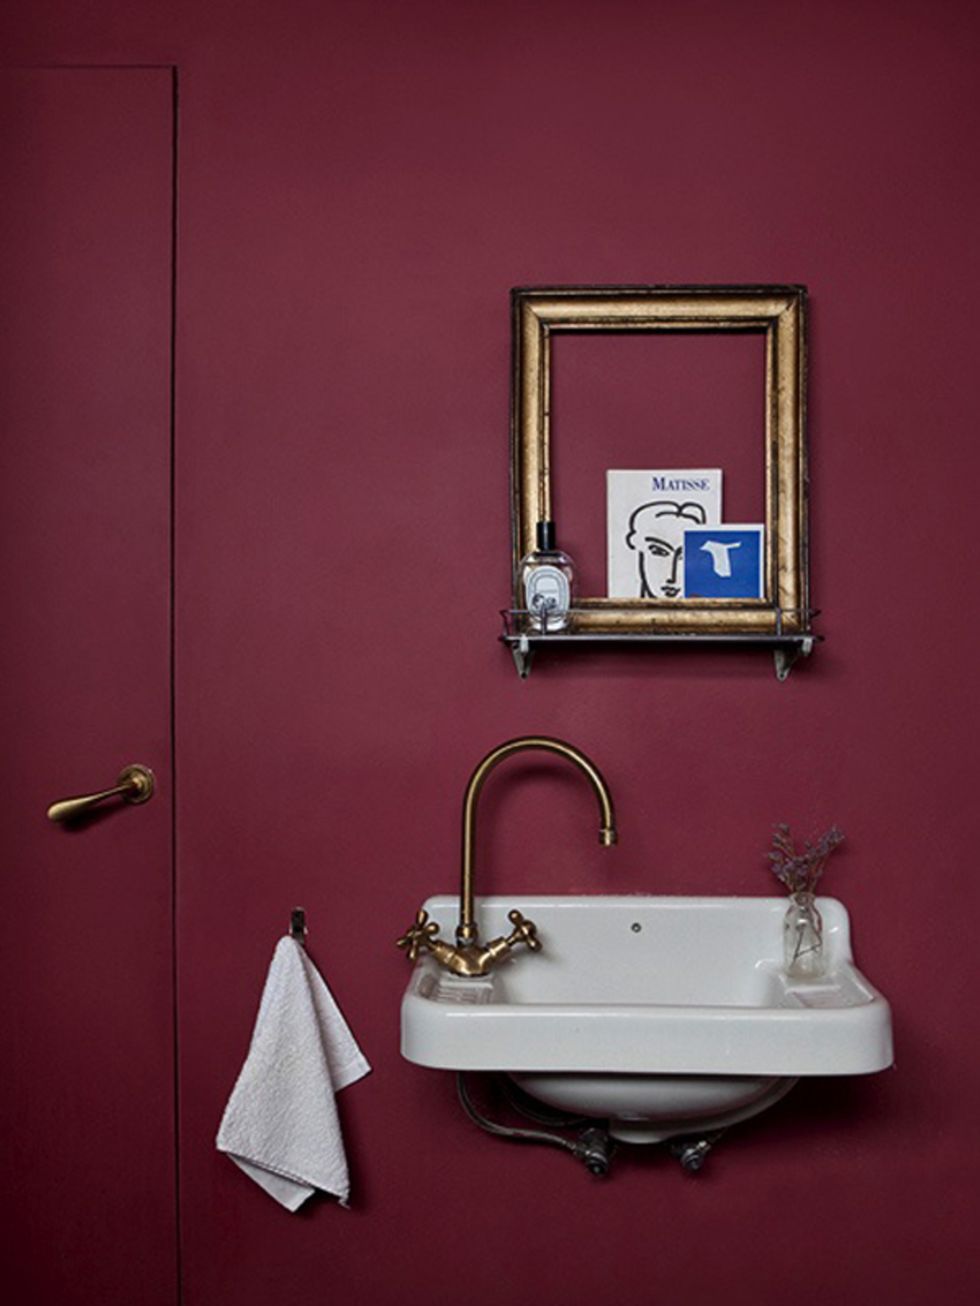 Bathroom sink, Property, Plumbing fixture, Tap, Wall, Room, Door, Sink, Household hardware, Mirror, 